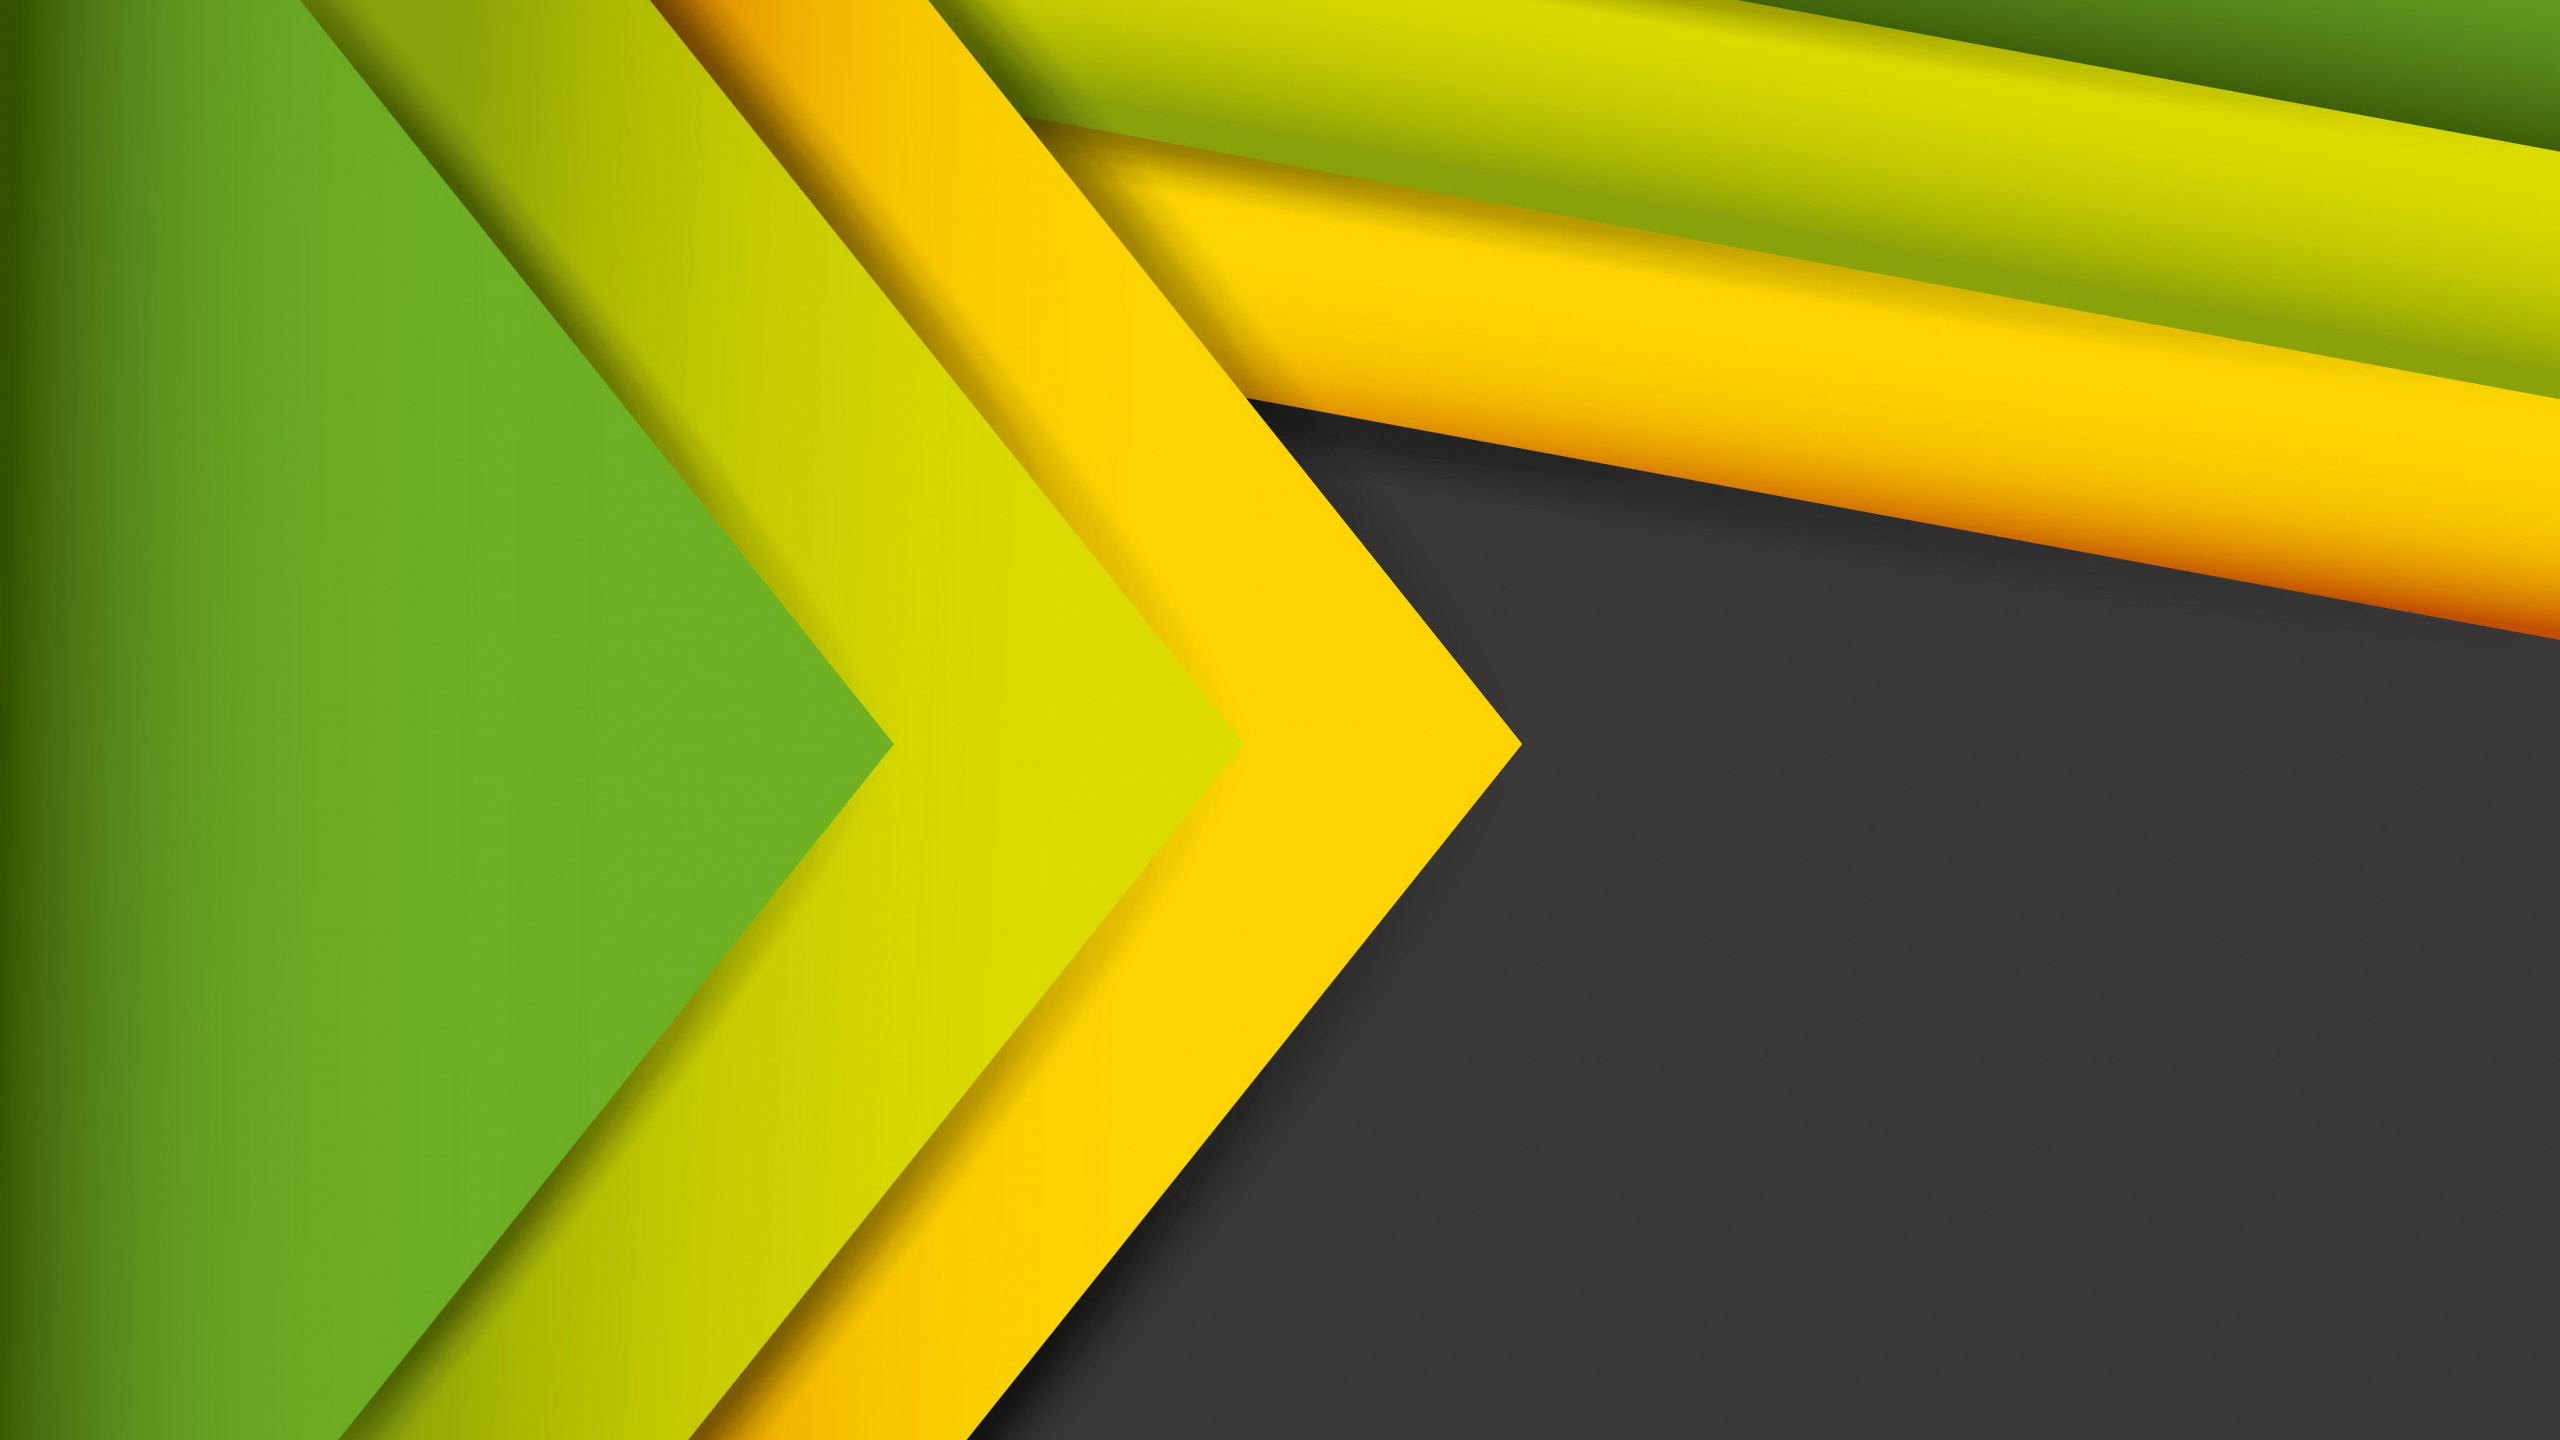 抽象艺术, 绿色的, 黄色的, 对称, 图形设计 壁纸 2560x1440 允许